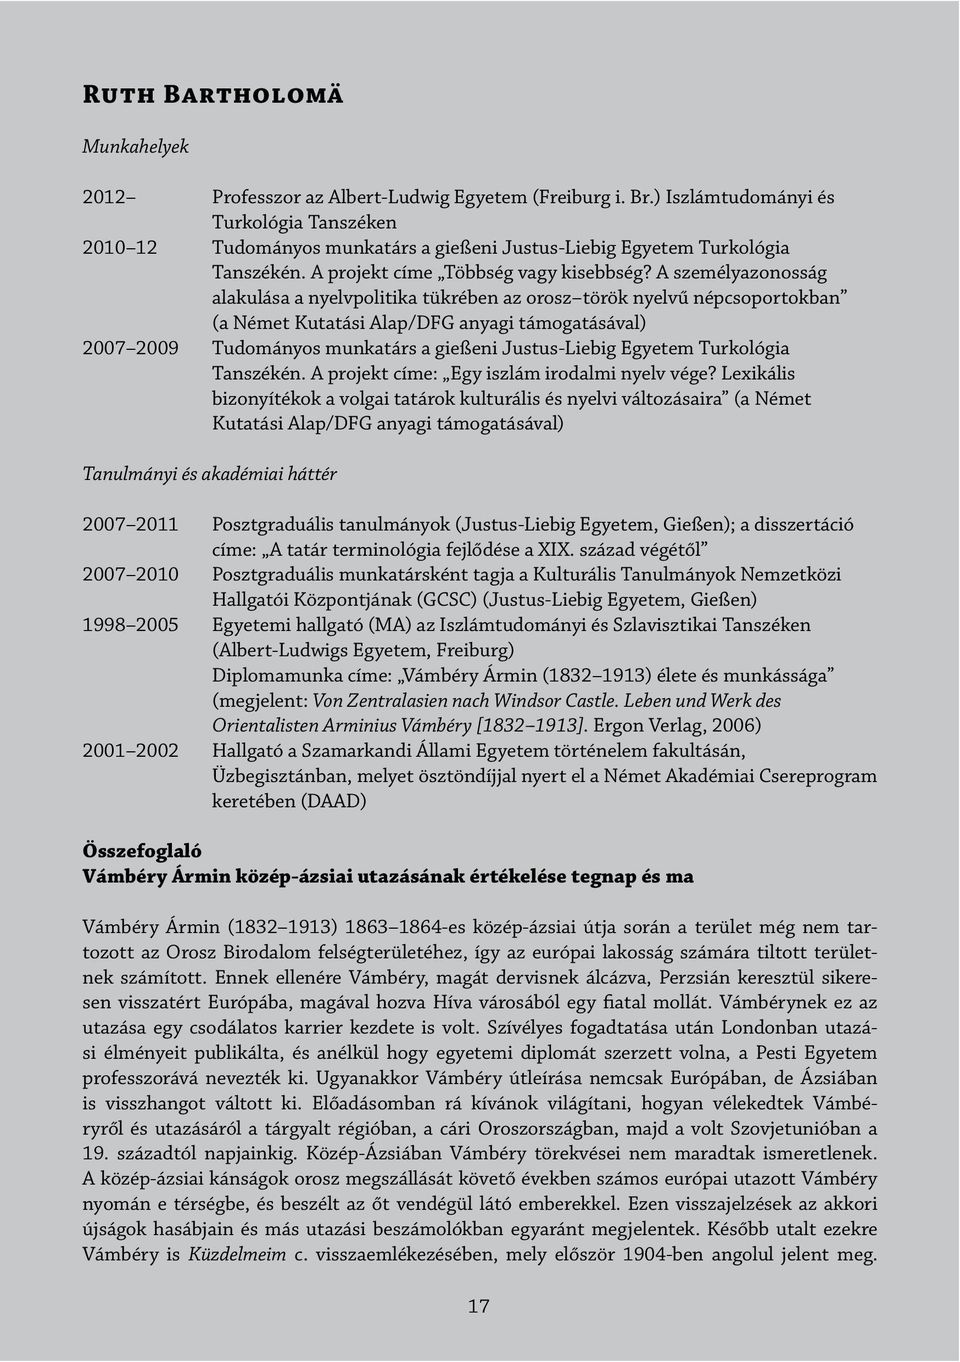 A személyazonosság alakulása a nyelvpolitika tükrében az orosz török nyelvű népcsoportokban (a Német Kutatási Alap/DFG anyagi támogatásával) 2007 2009 Tudományos munkatárs a gießeni Justus-Liebig